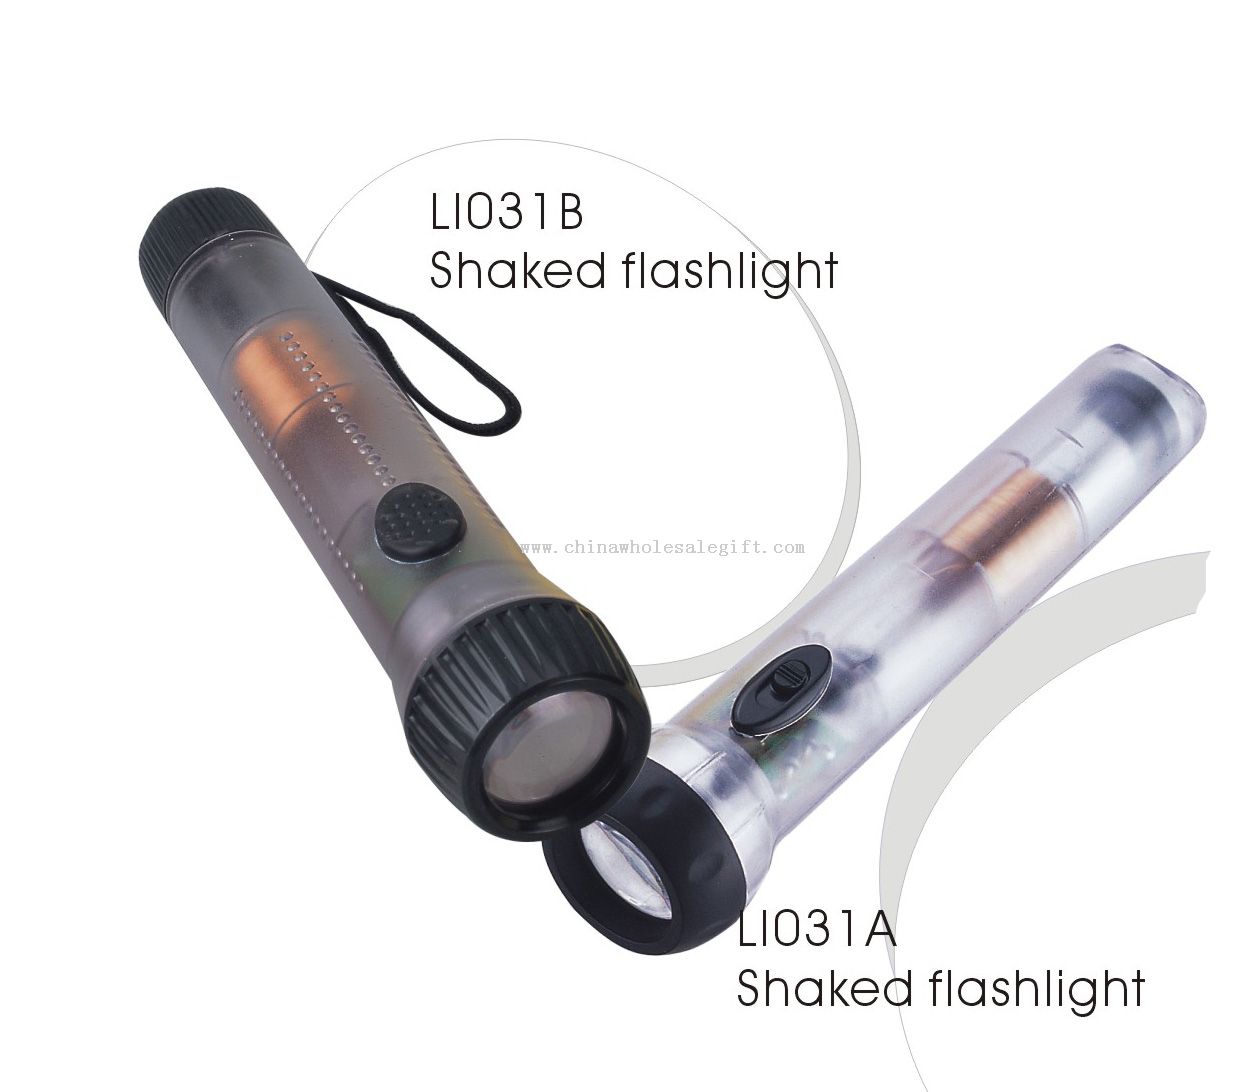 Shaked flashlight